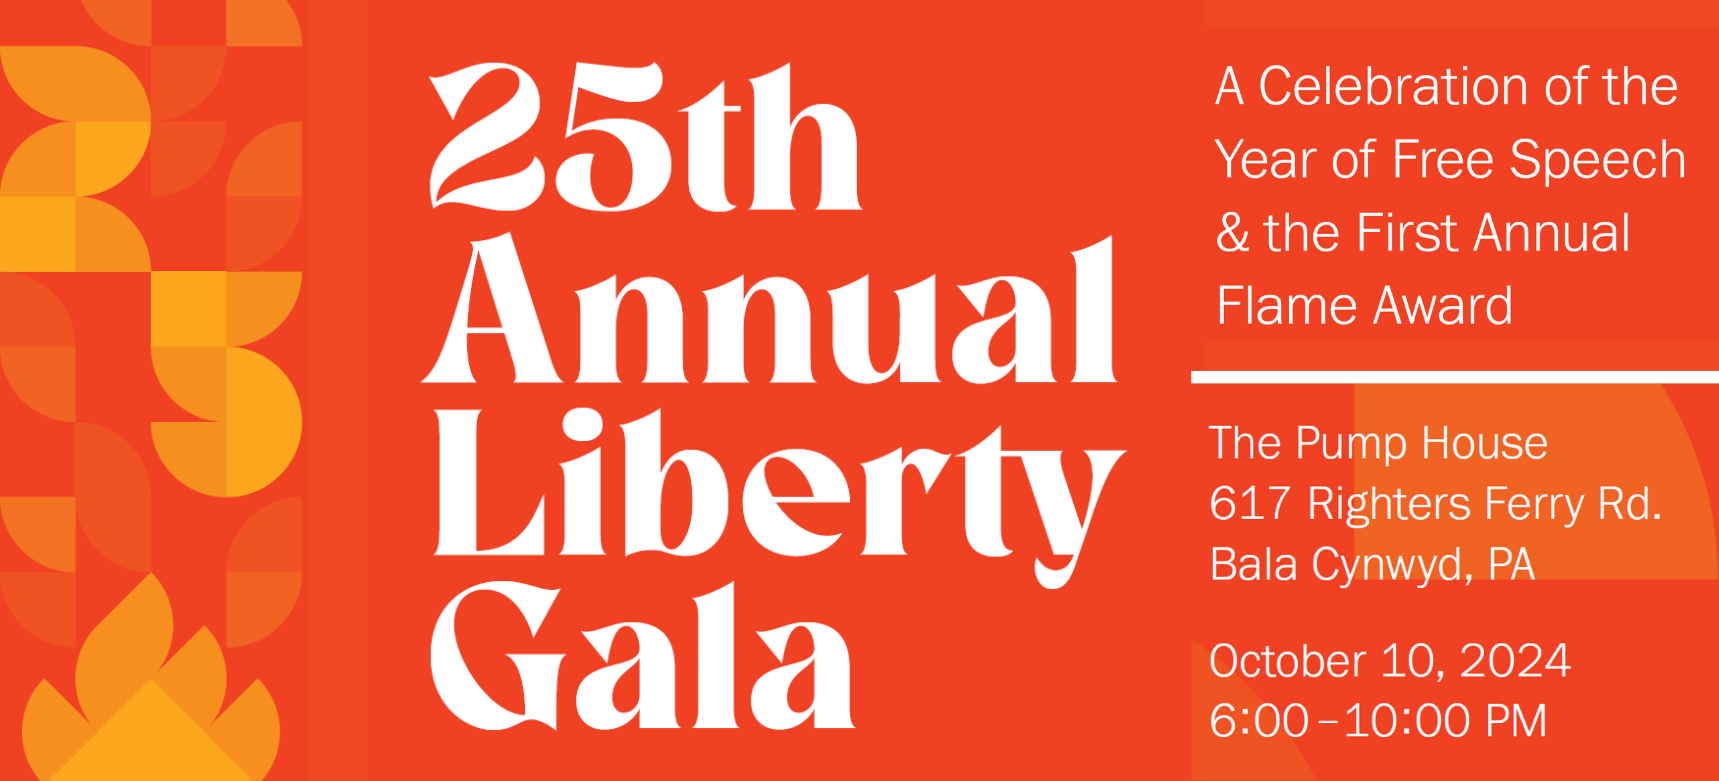 25th Annual Liberty Gala